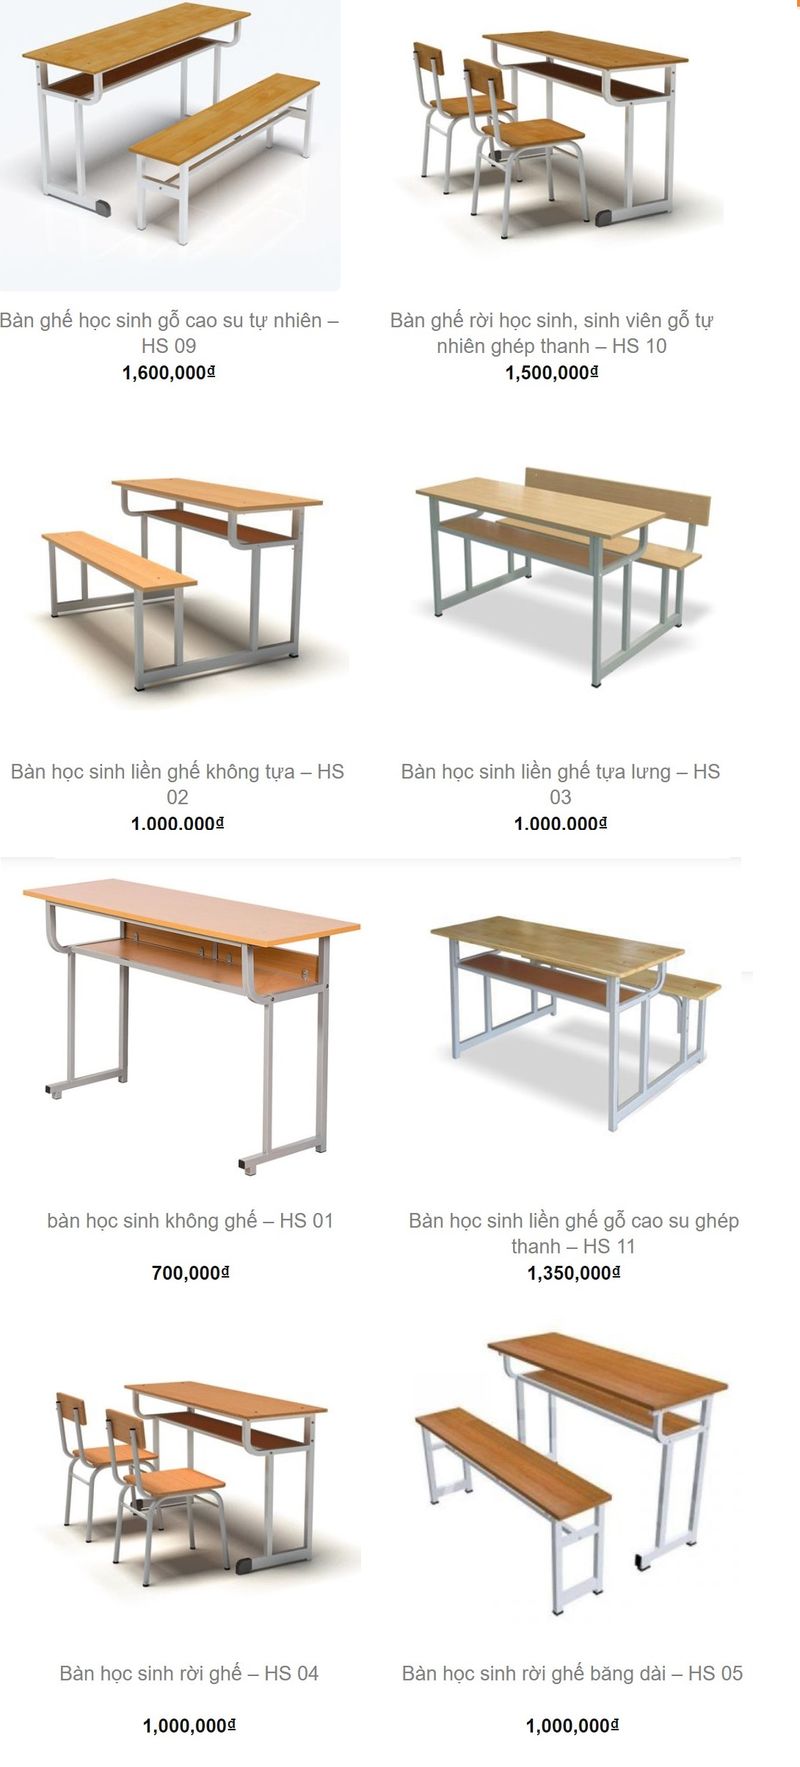 Bảng giá bàn ghế học sinh lớp 1, 2, 3, 4, 5, cấp 1, cấp 2